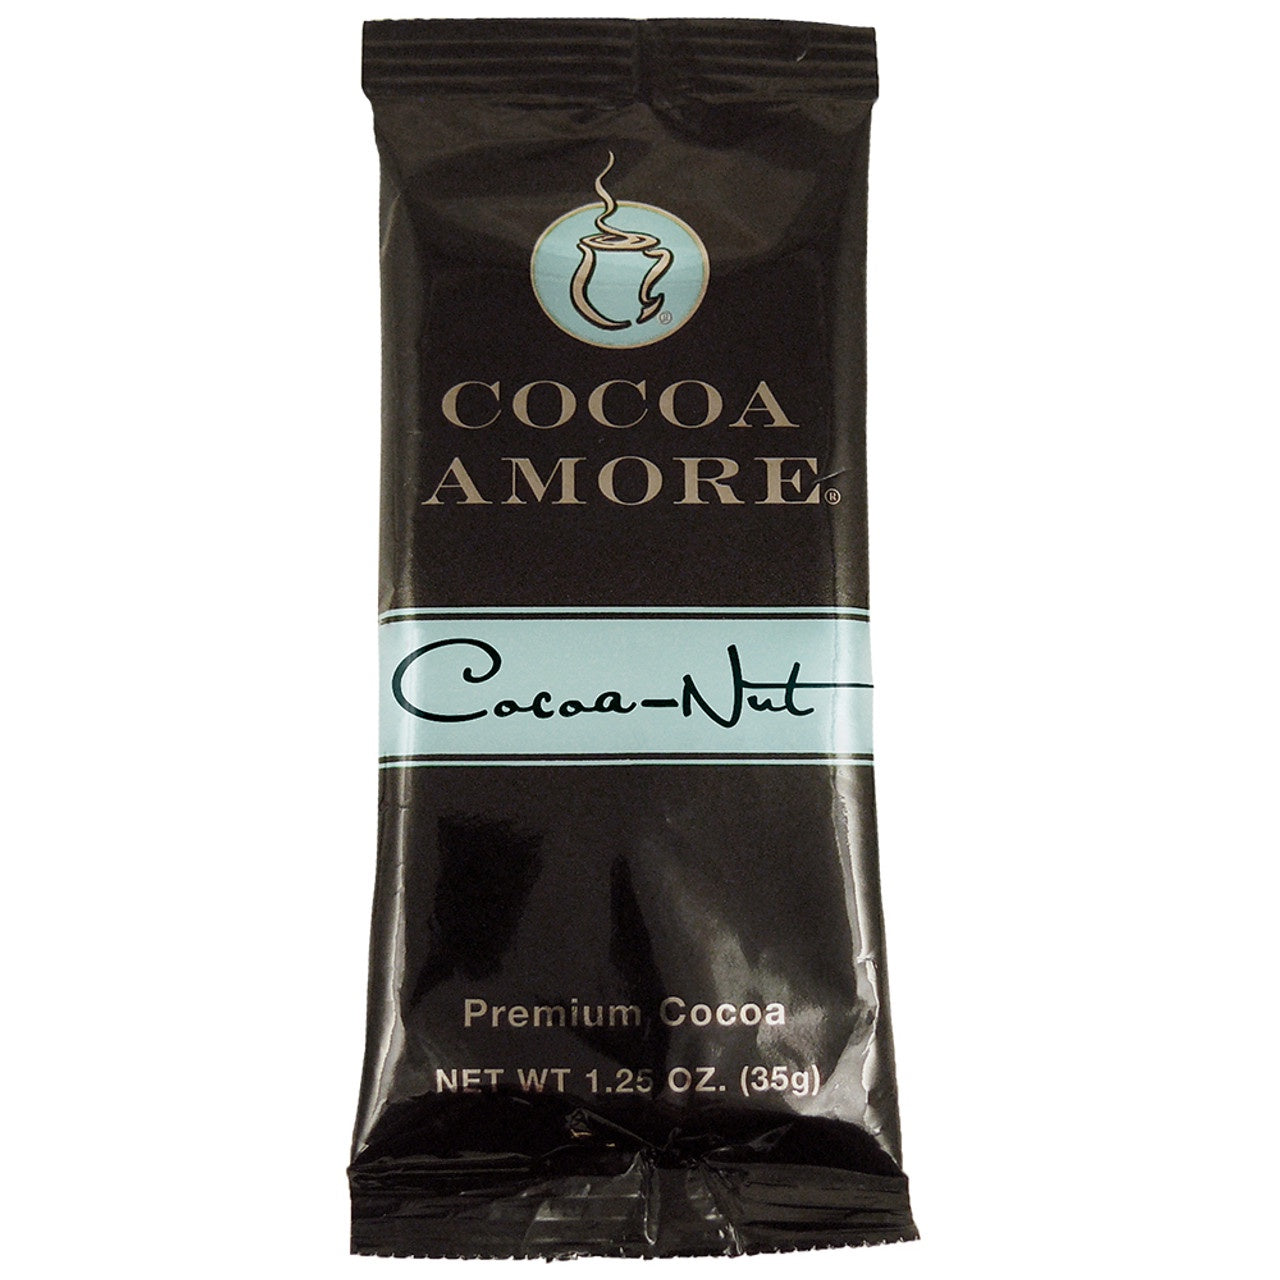 Cocoa Amore Cocoa-Nut Hot Chocolate Mix, 1.25 oz.